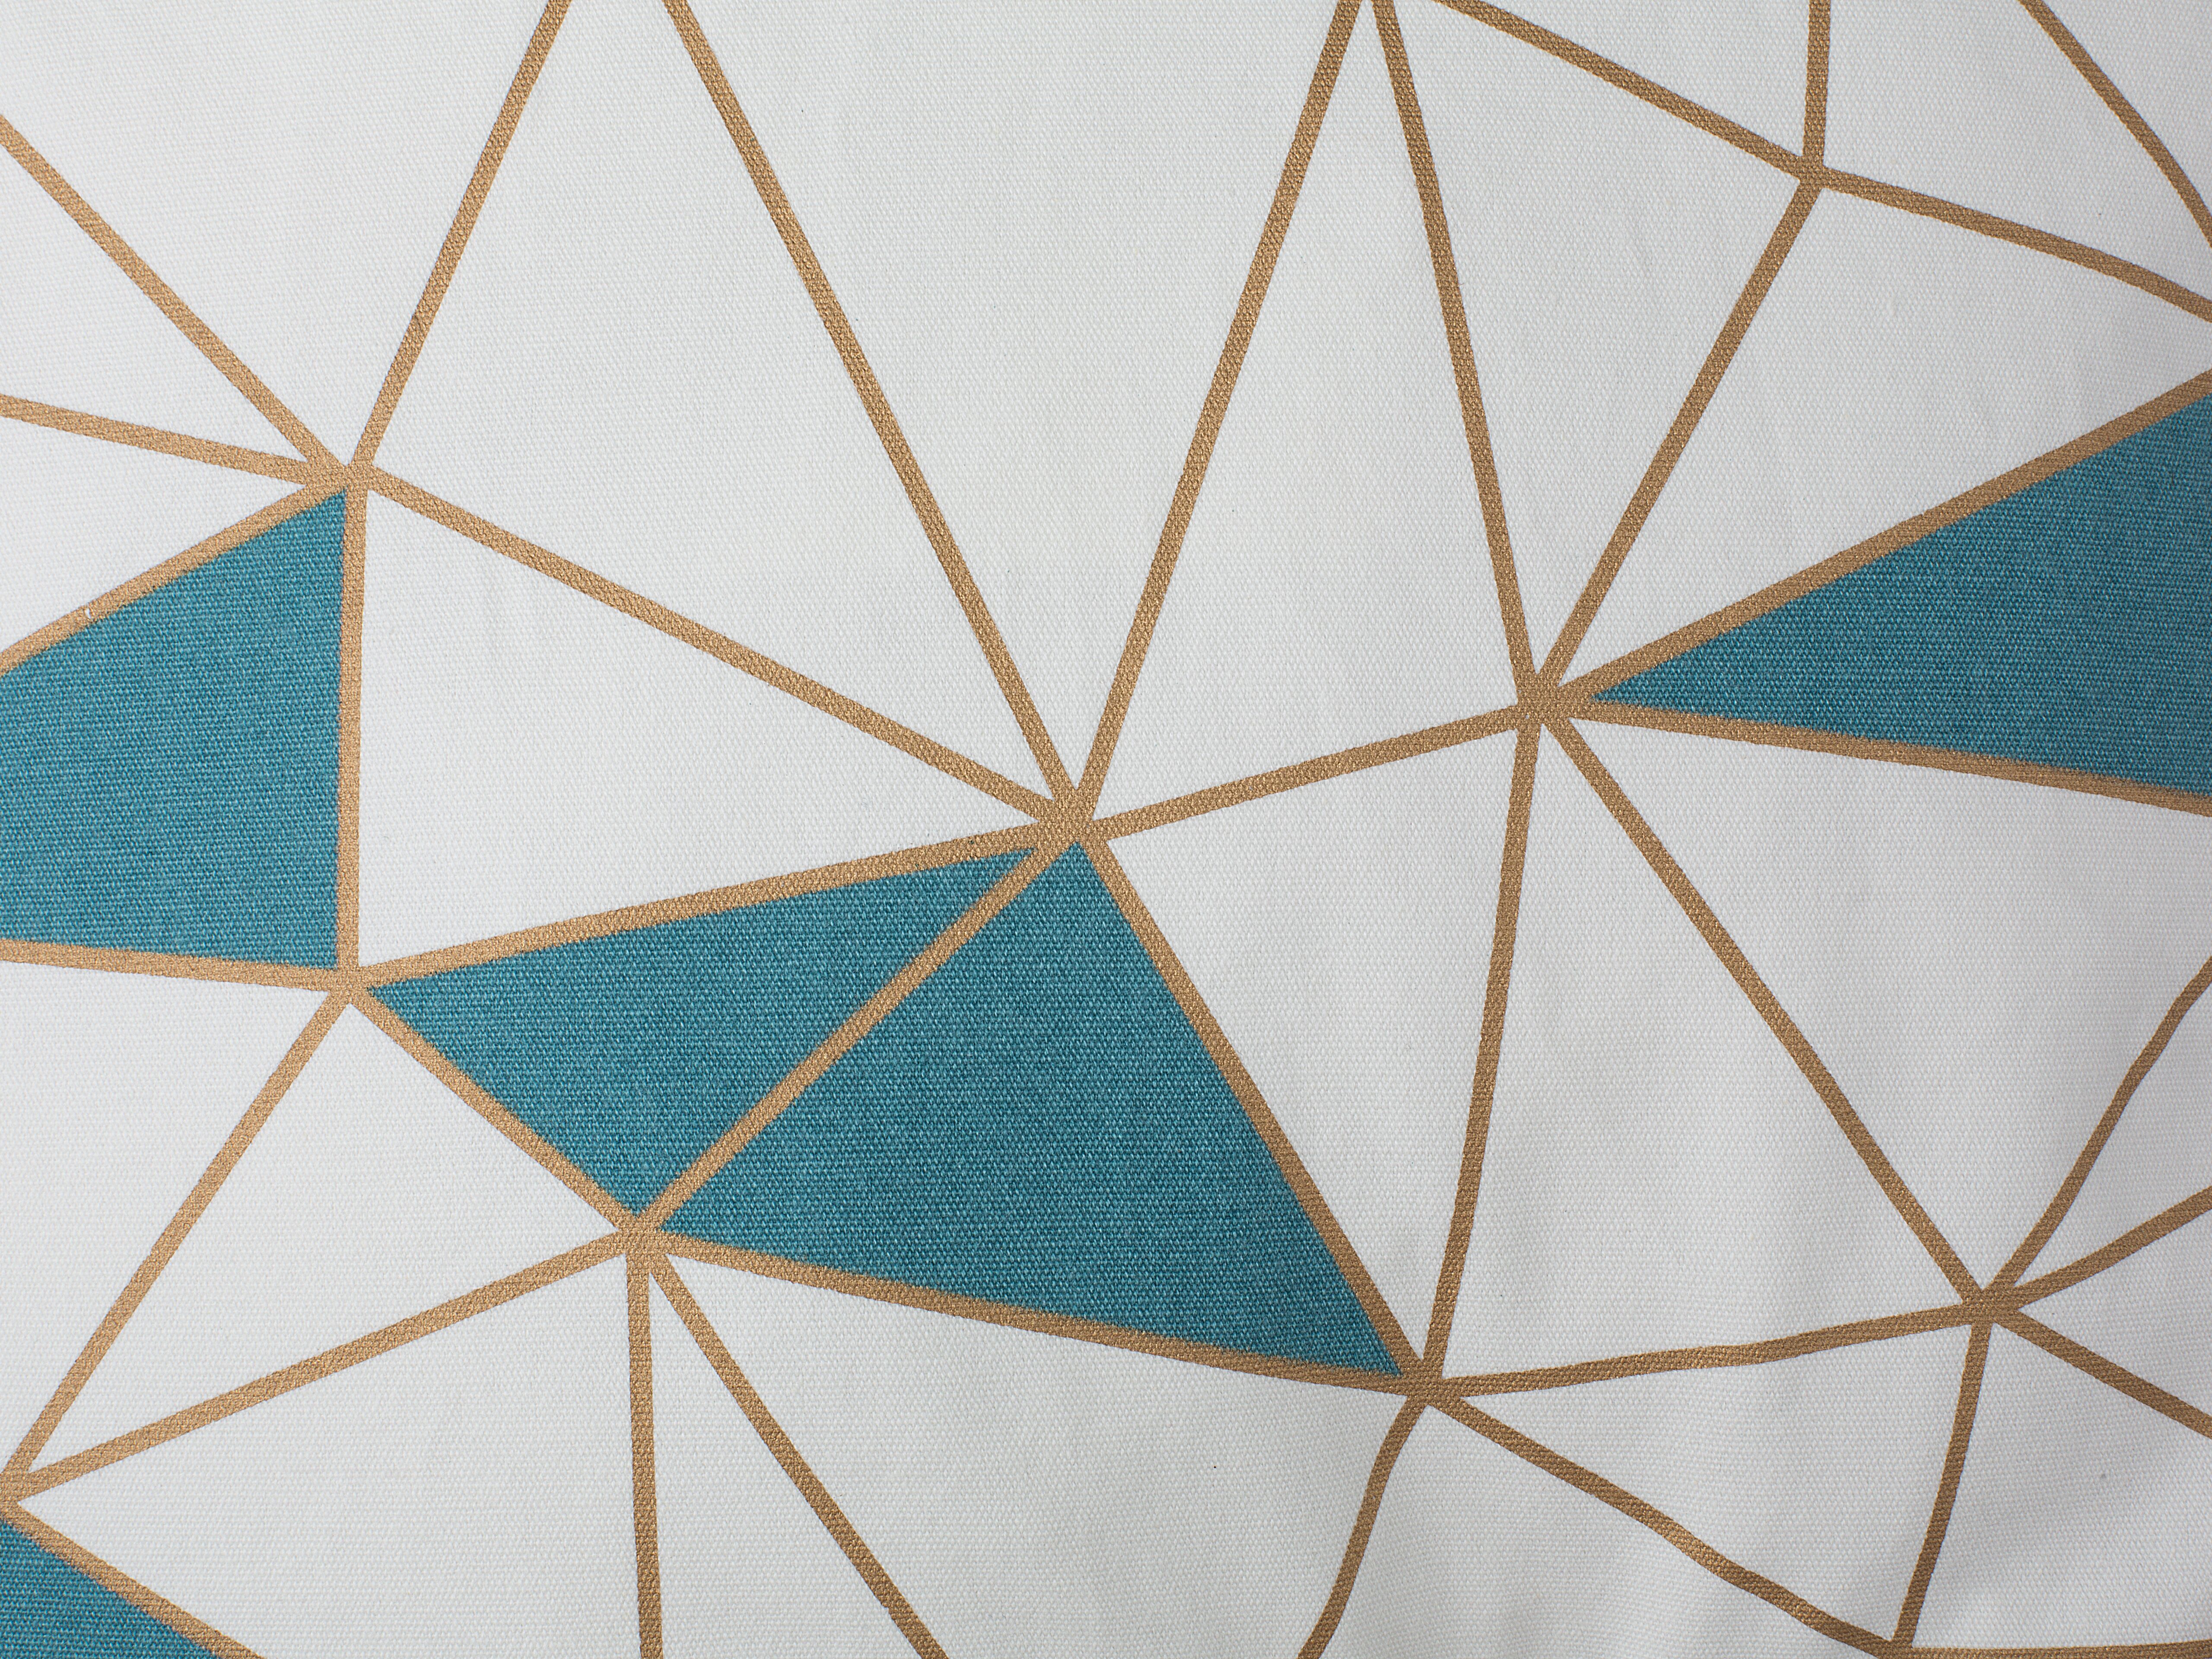 2 poduszki dekoracyjne w geometryczny wzór 45 x 45 cm niebieskie CLARKIA